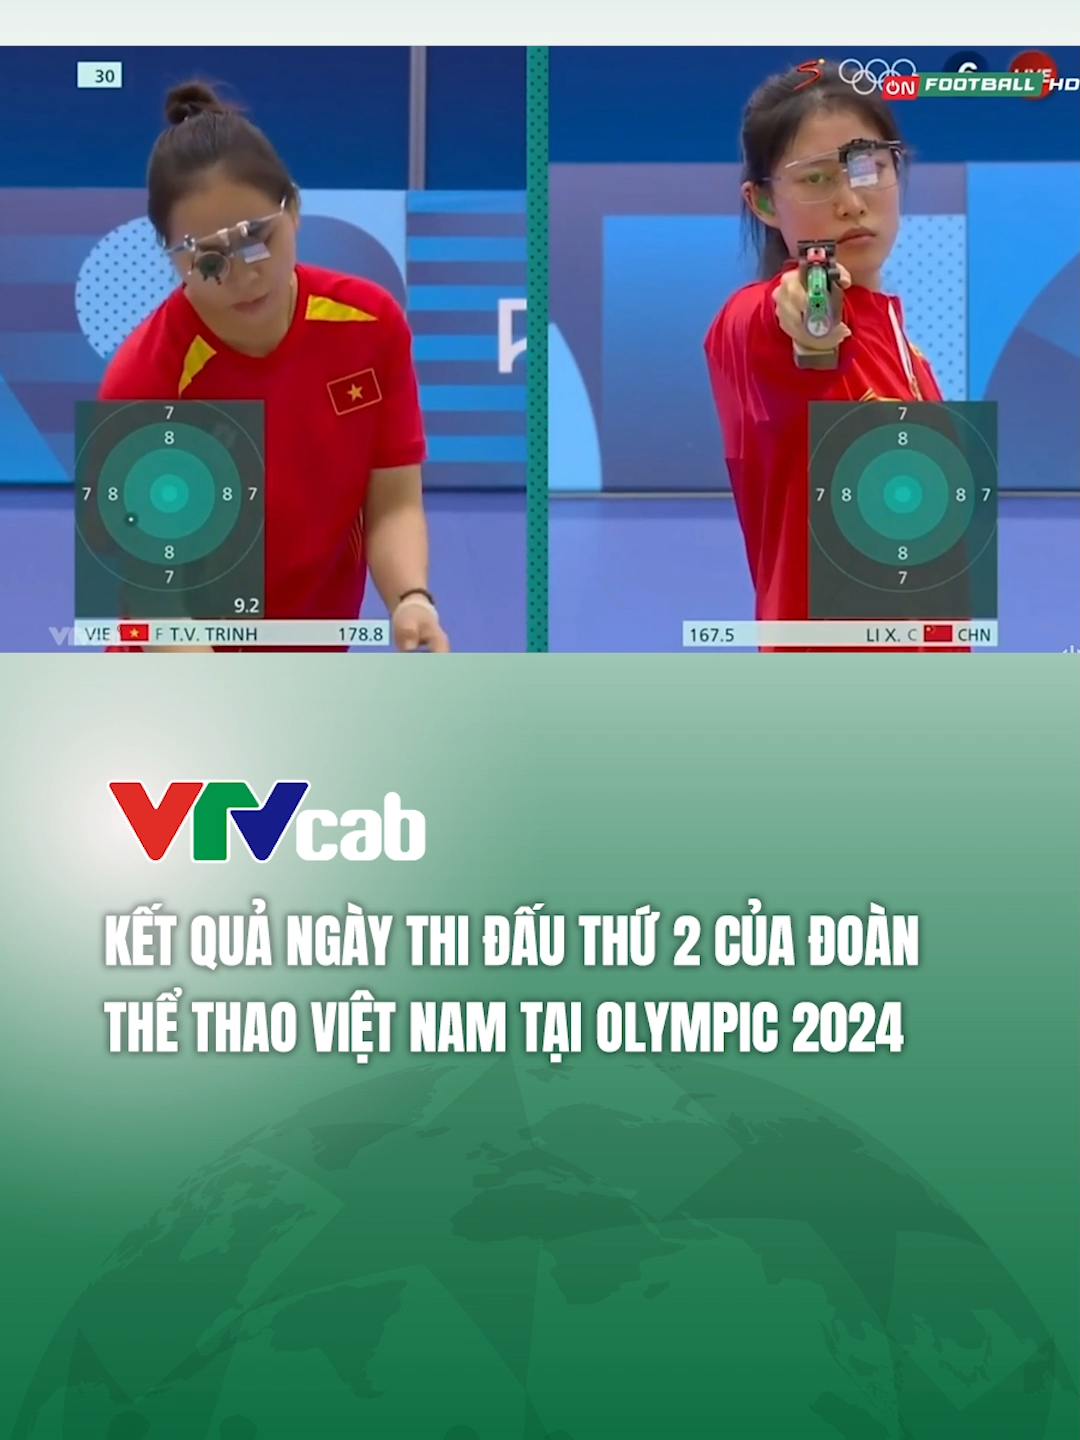 Kết quả ngày thi đấu thứ 2 của đoàn thể thao Việt Nam tại #olympics Paris 2024 #vtvcab #thethaovietnam #tiktoknews